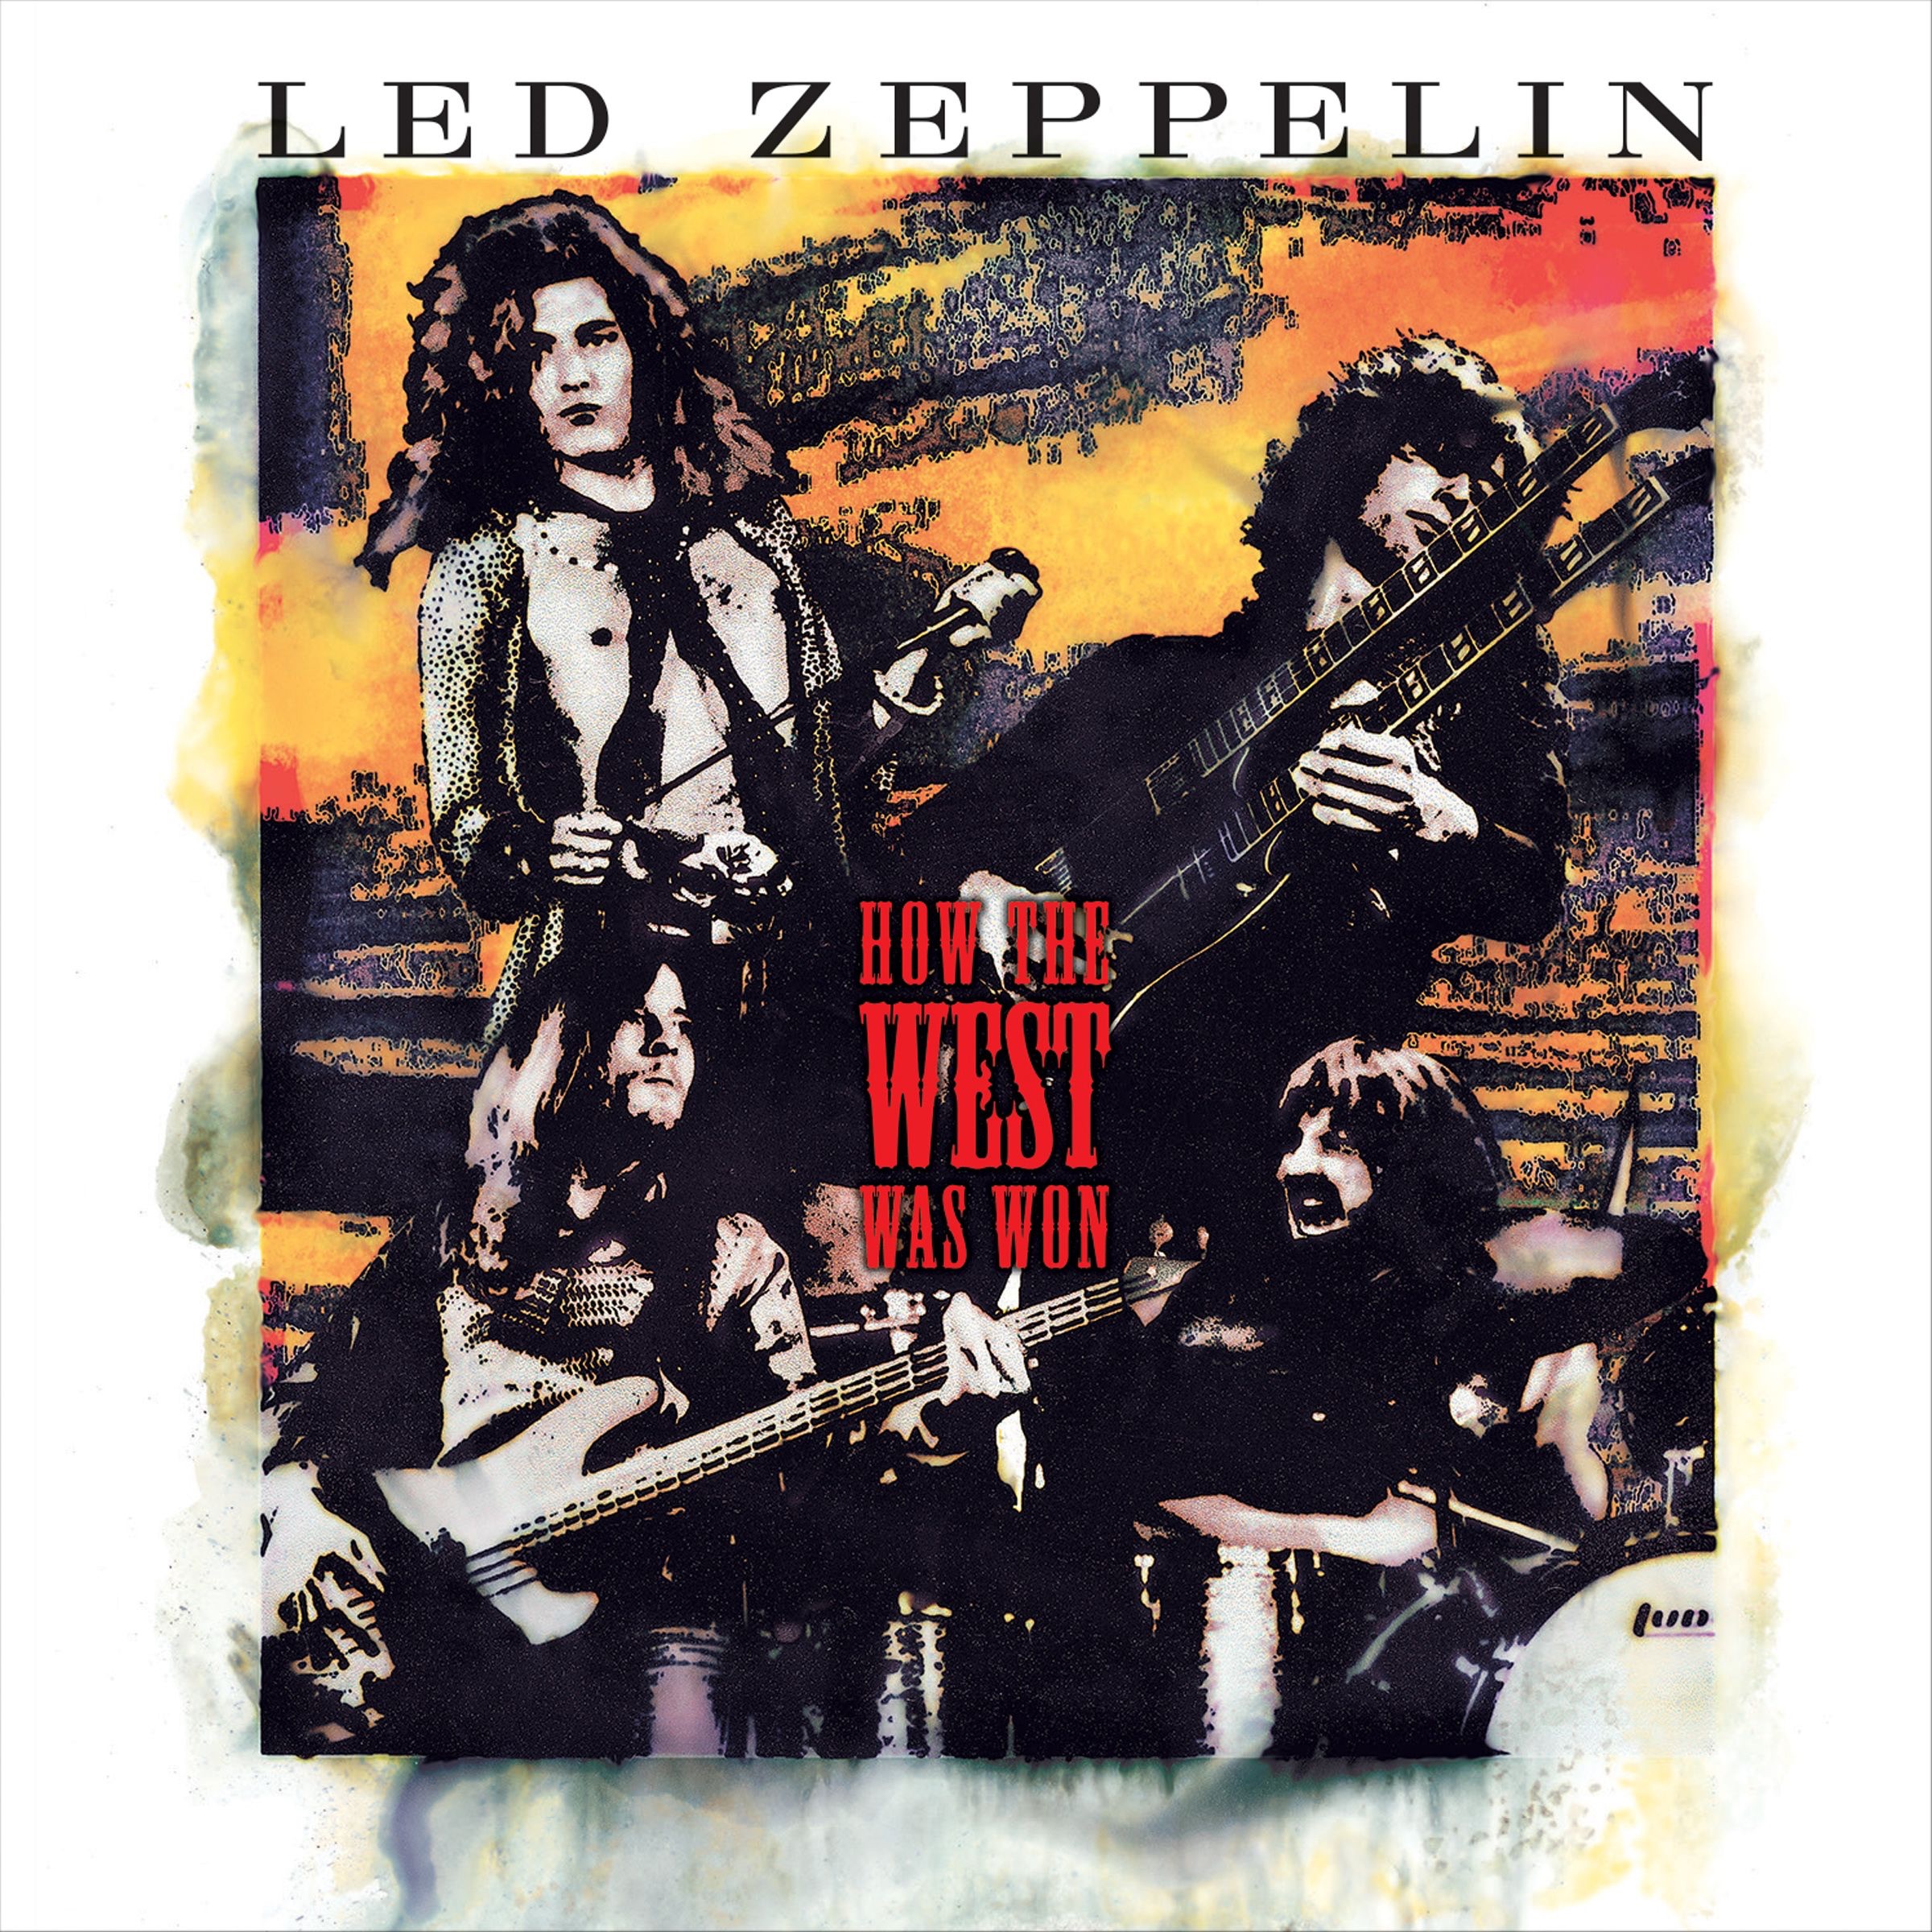 [Hi-Res/Flac][24bit/96khz] Led Zeppelin Remastered Pack (12 Albums)